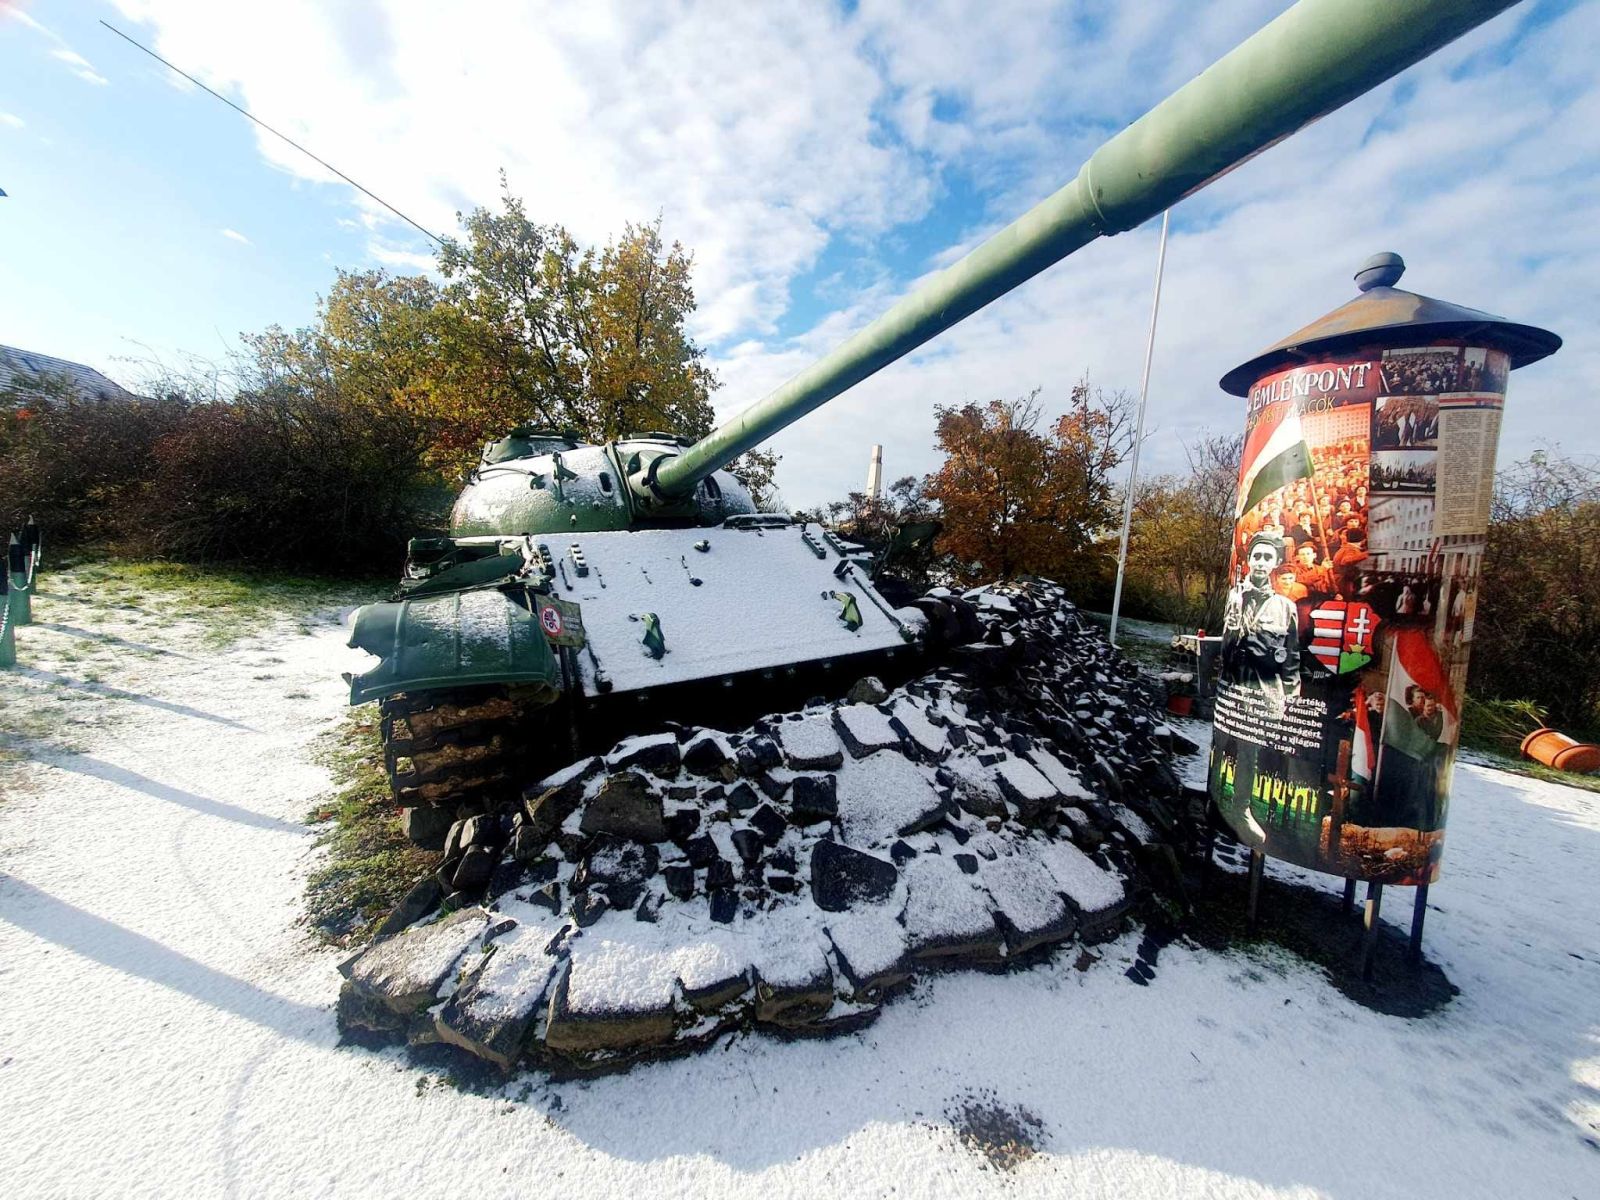 A téli szünet után január 5-től látogatható újra a pákozdi Katonai Emlékpark